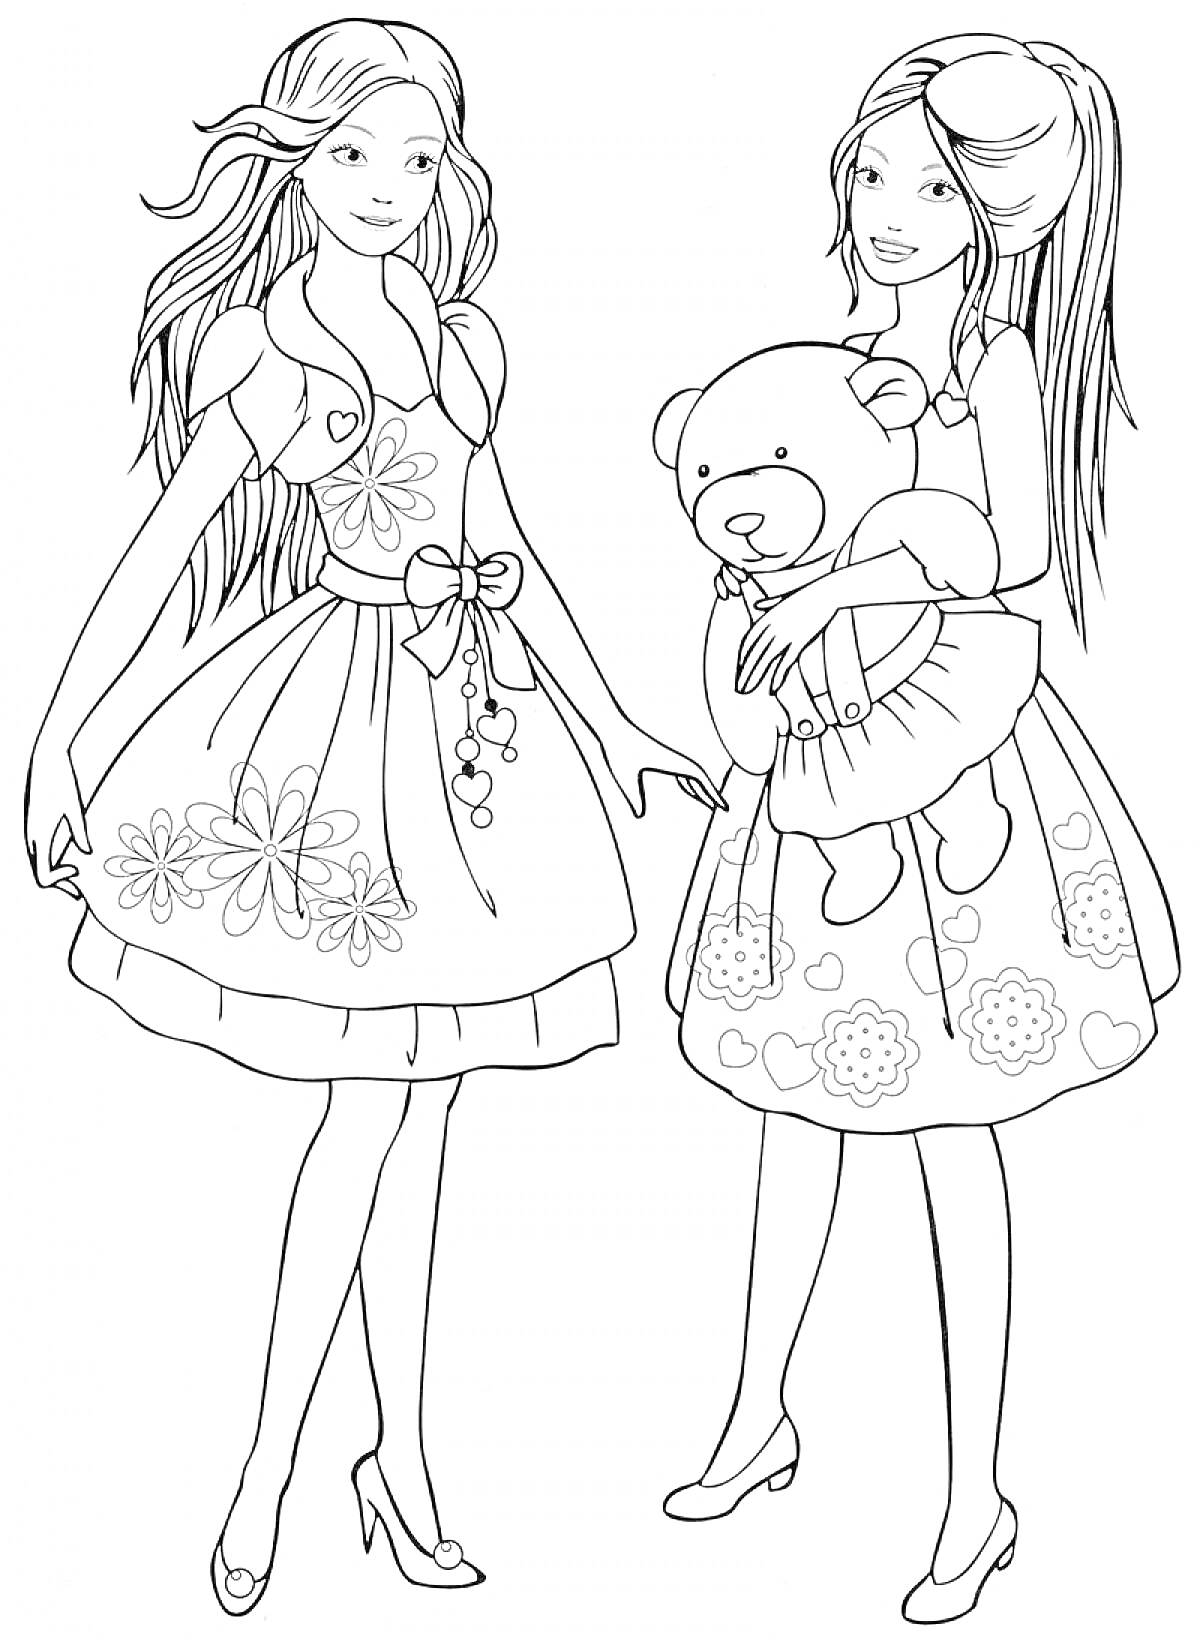 Две девочки в платьях с игрушечным медведем